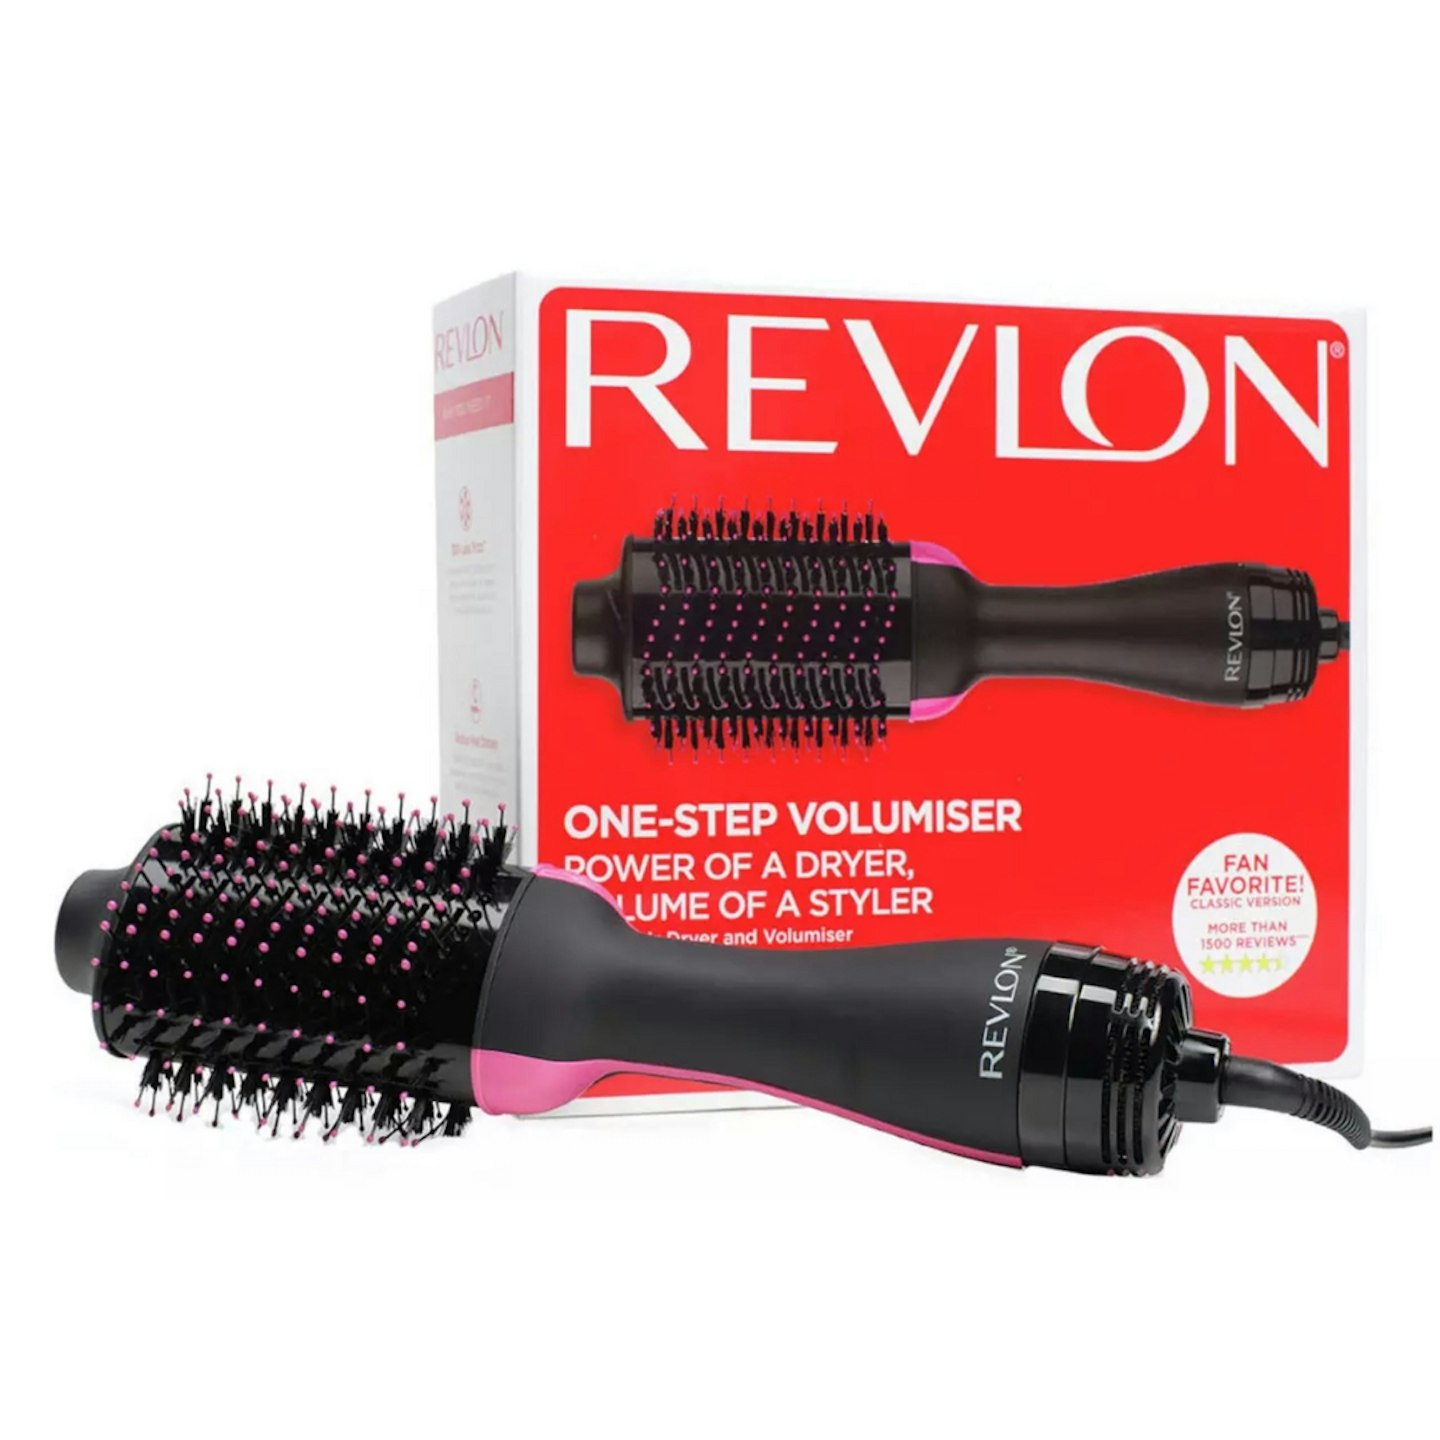 Revlon RVDR5222UK1 One-Step Hair Dryer and Volumiser